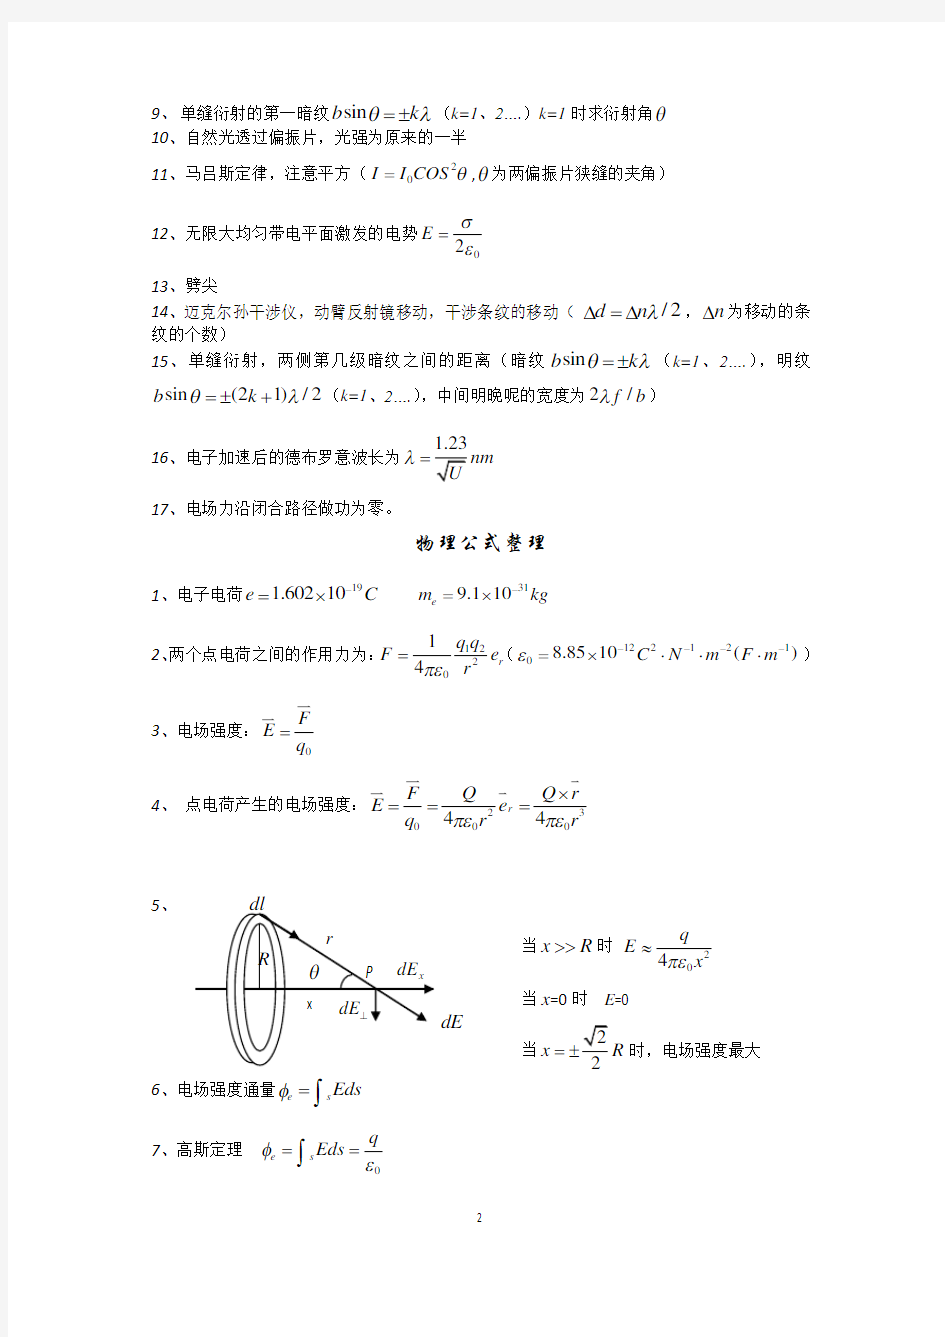 物理学教程(第二版)-马文蔚下册公式原理整理